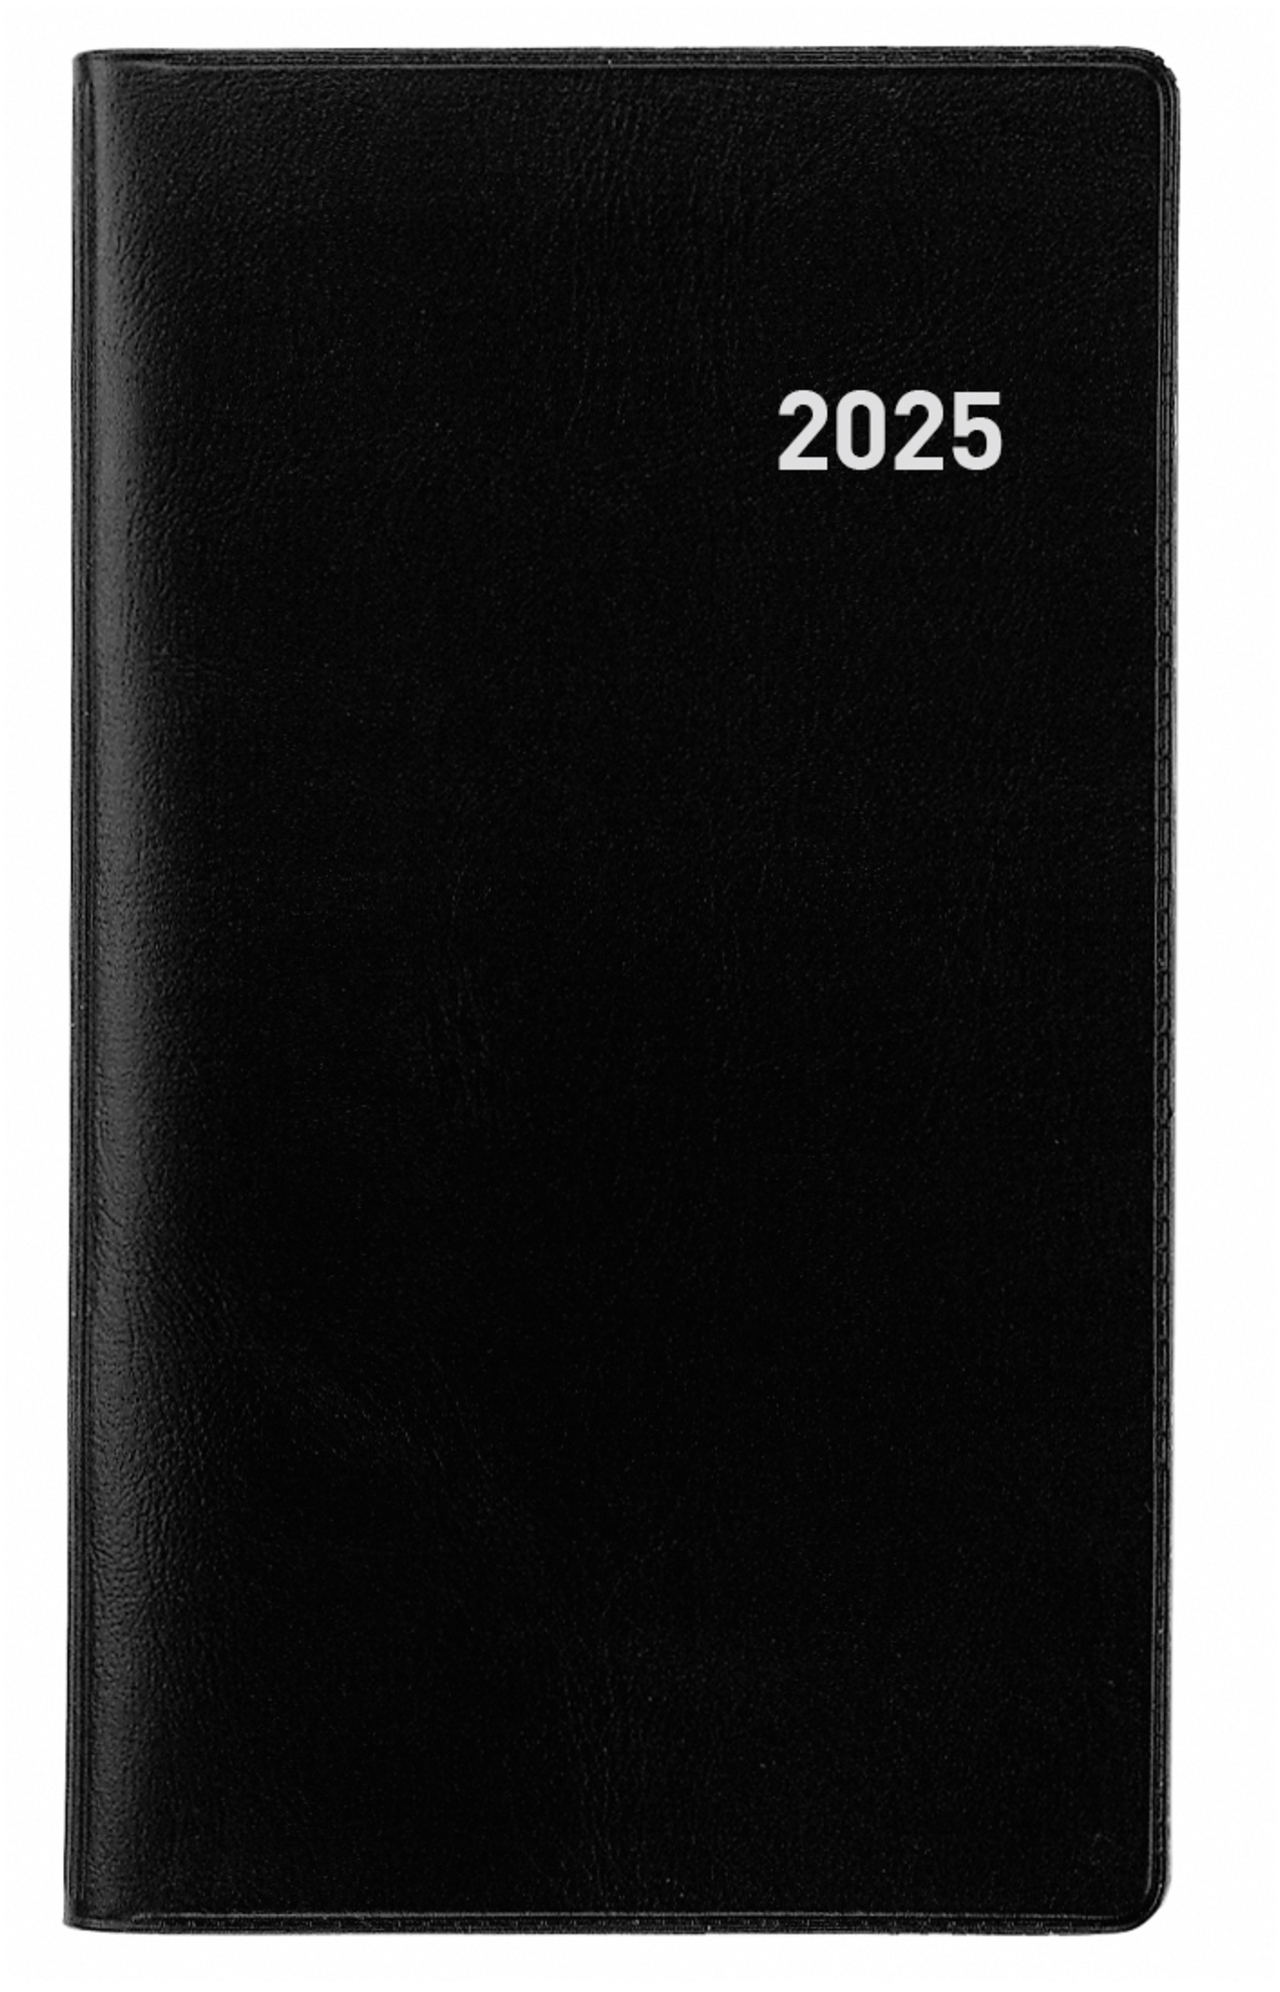 BIELLA Agenda Paris 2025 851512020025 1M/2P noir ML 7.5x12.6cm